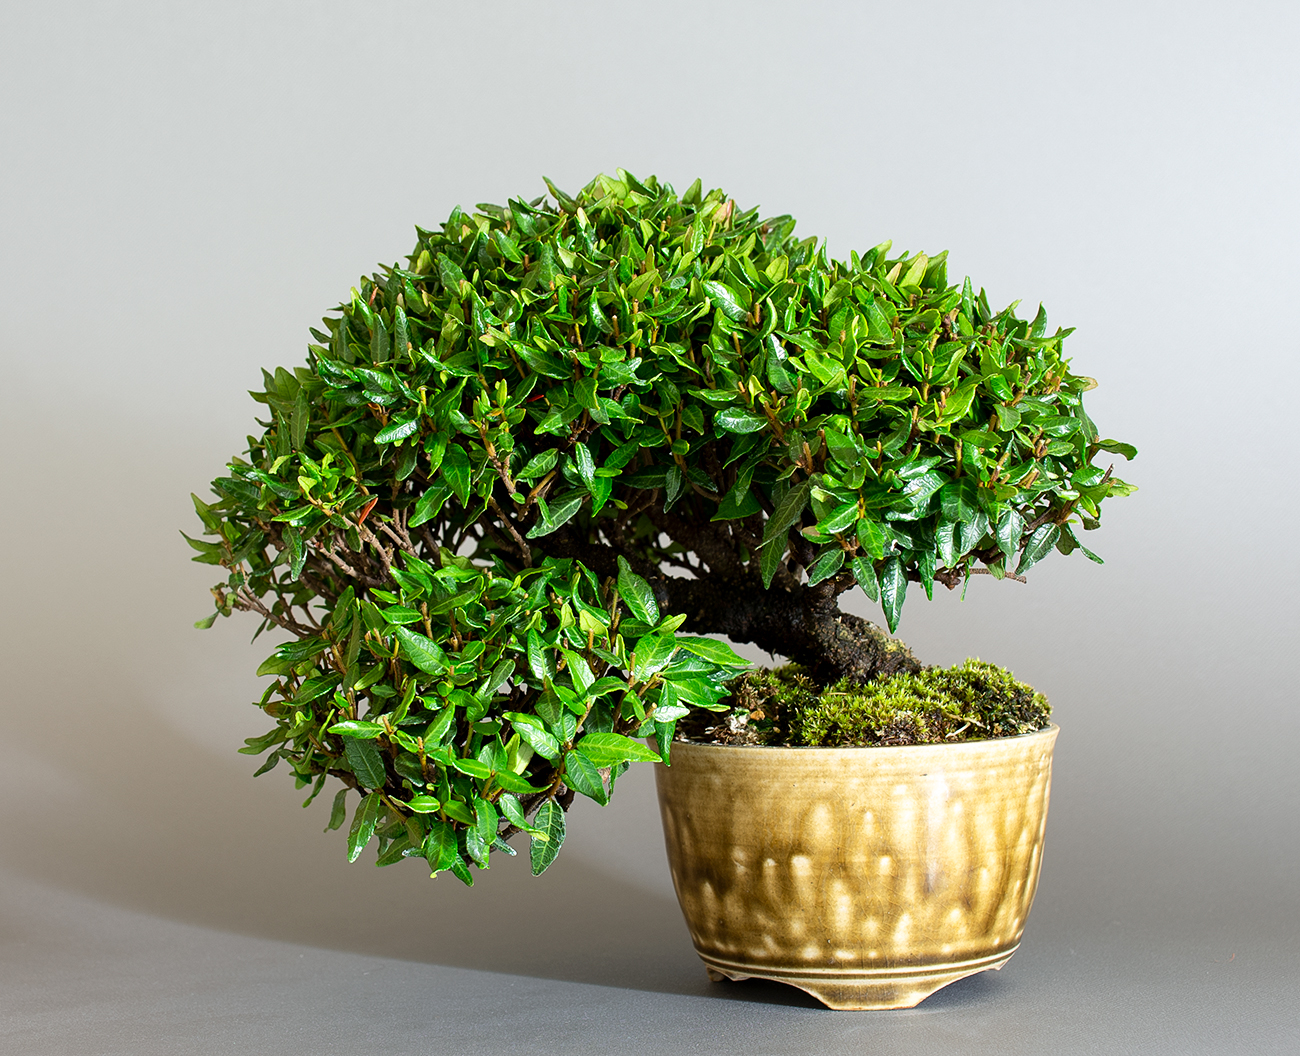 チリメンカズラ-D2-2（ちりめんかずら・縮緬葛）雑木盆栽の販売と育て方・作り方・Chirimen kazura bonsai